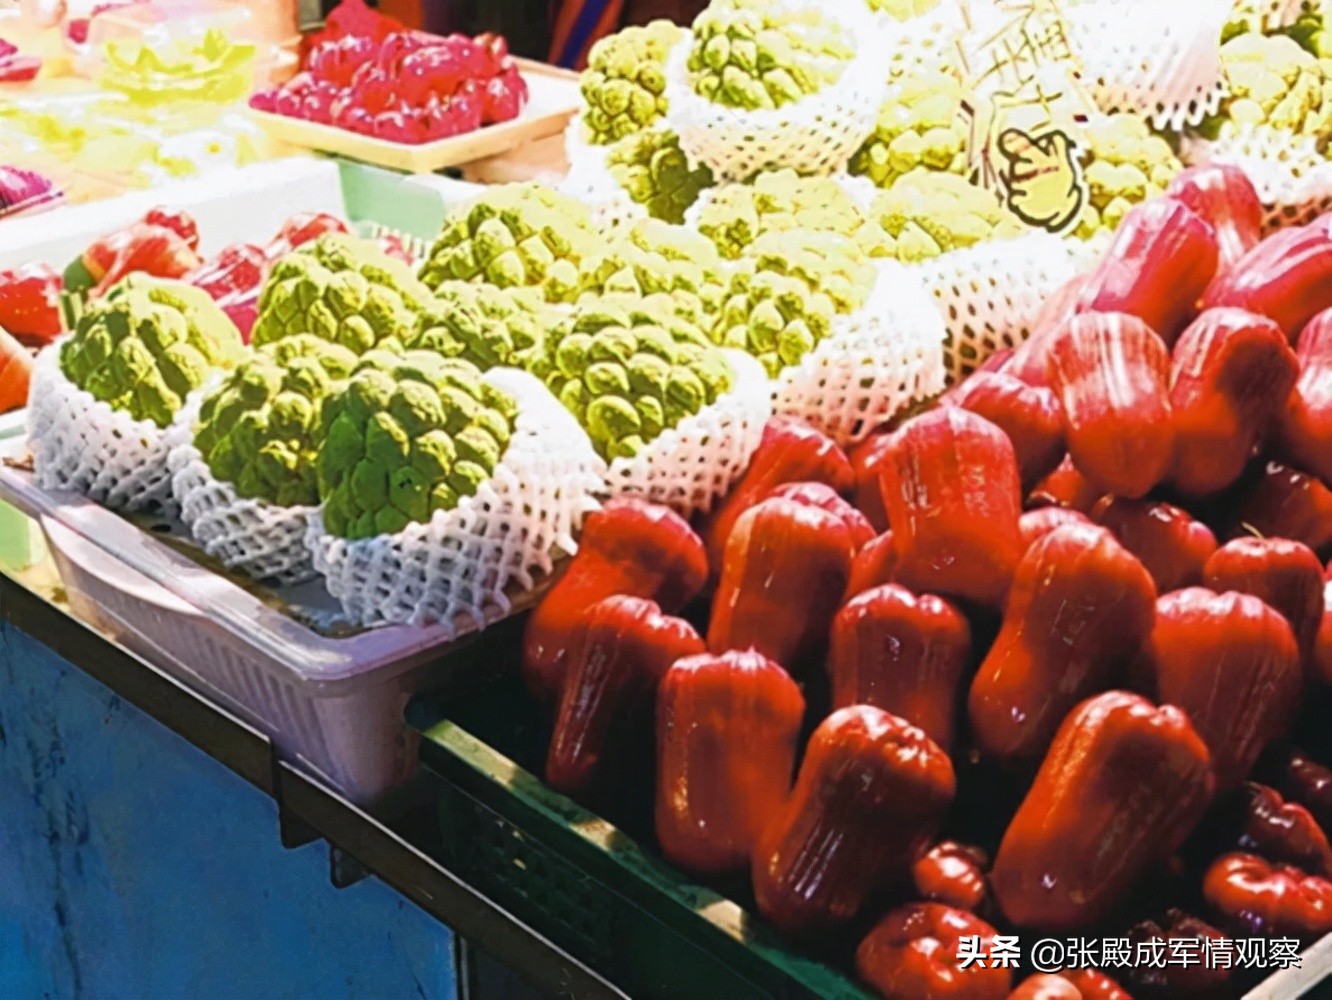 忍无可忍无须再忍？大陆禁止台湾水果输入 蔡英文当局欲告洋状-第3张图片-大千世界